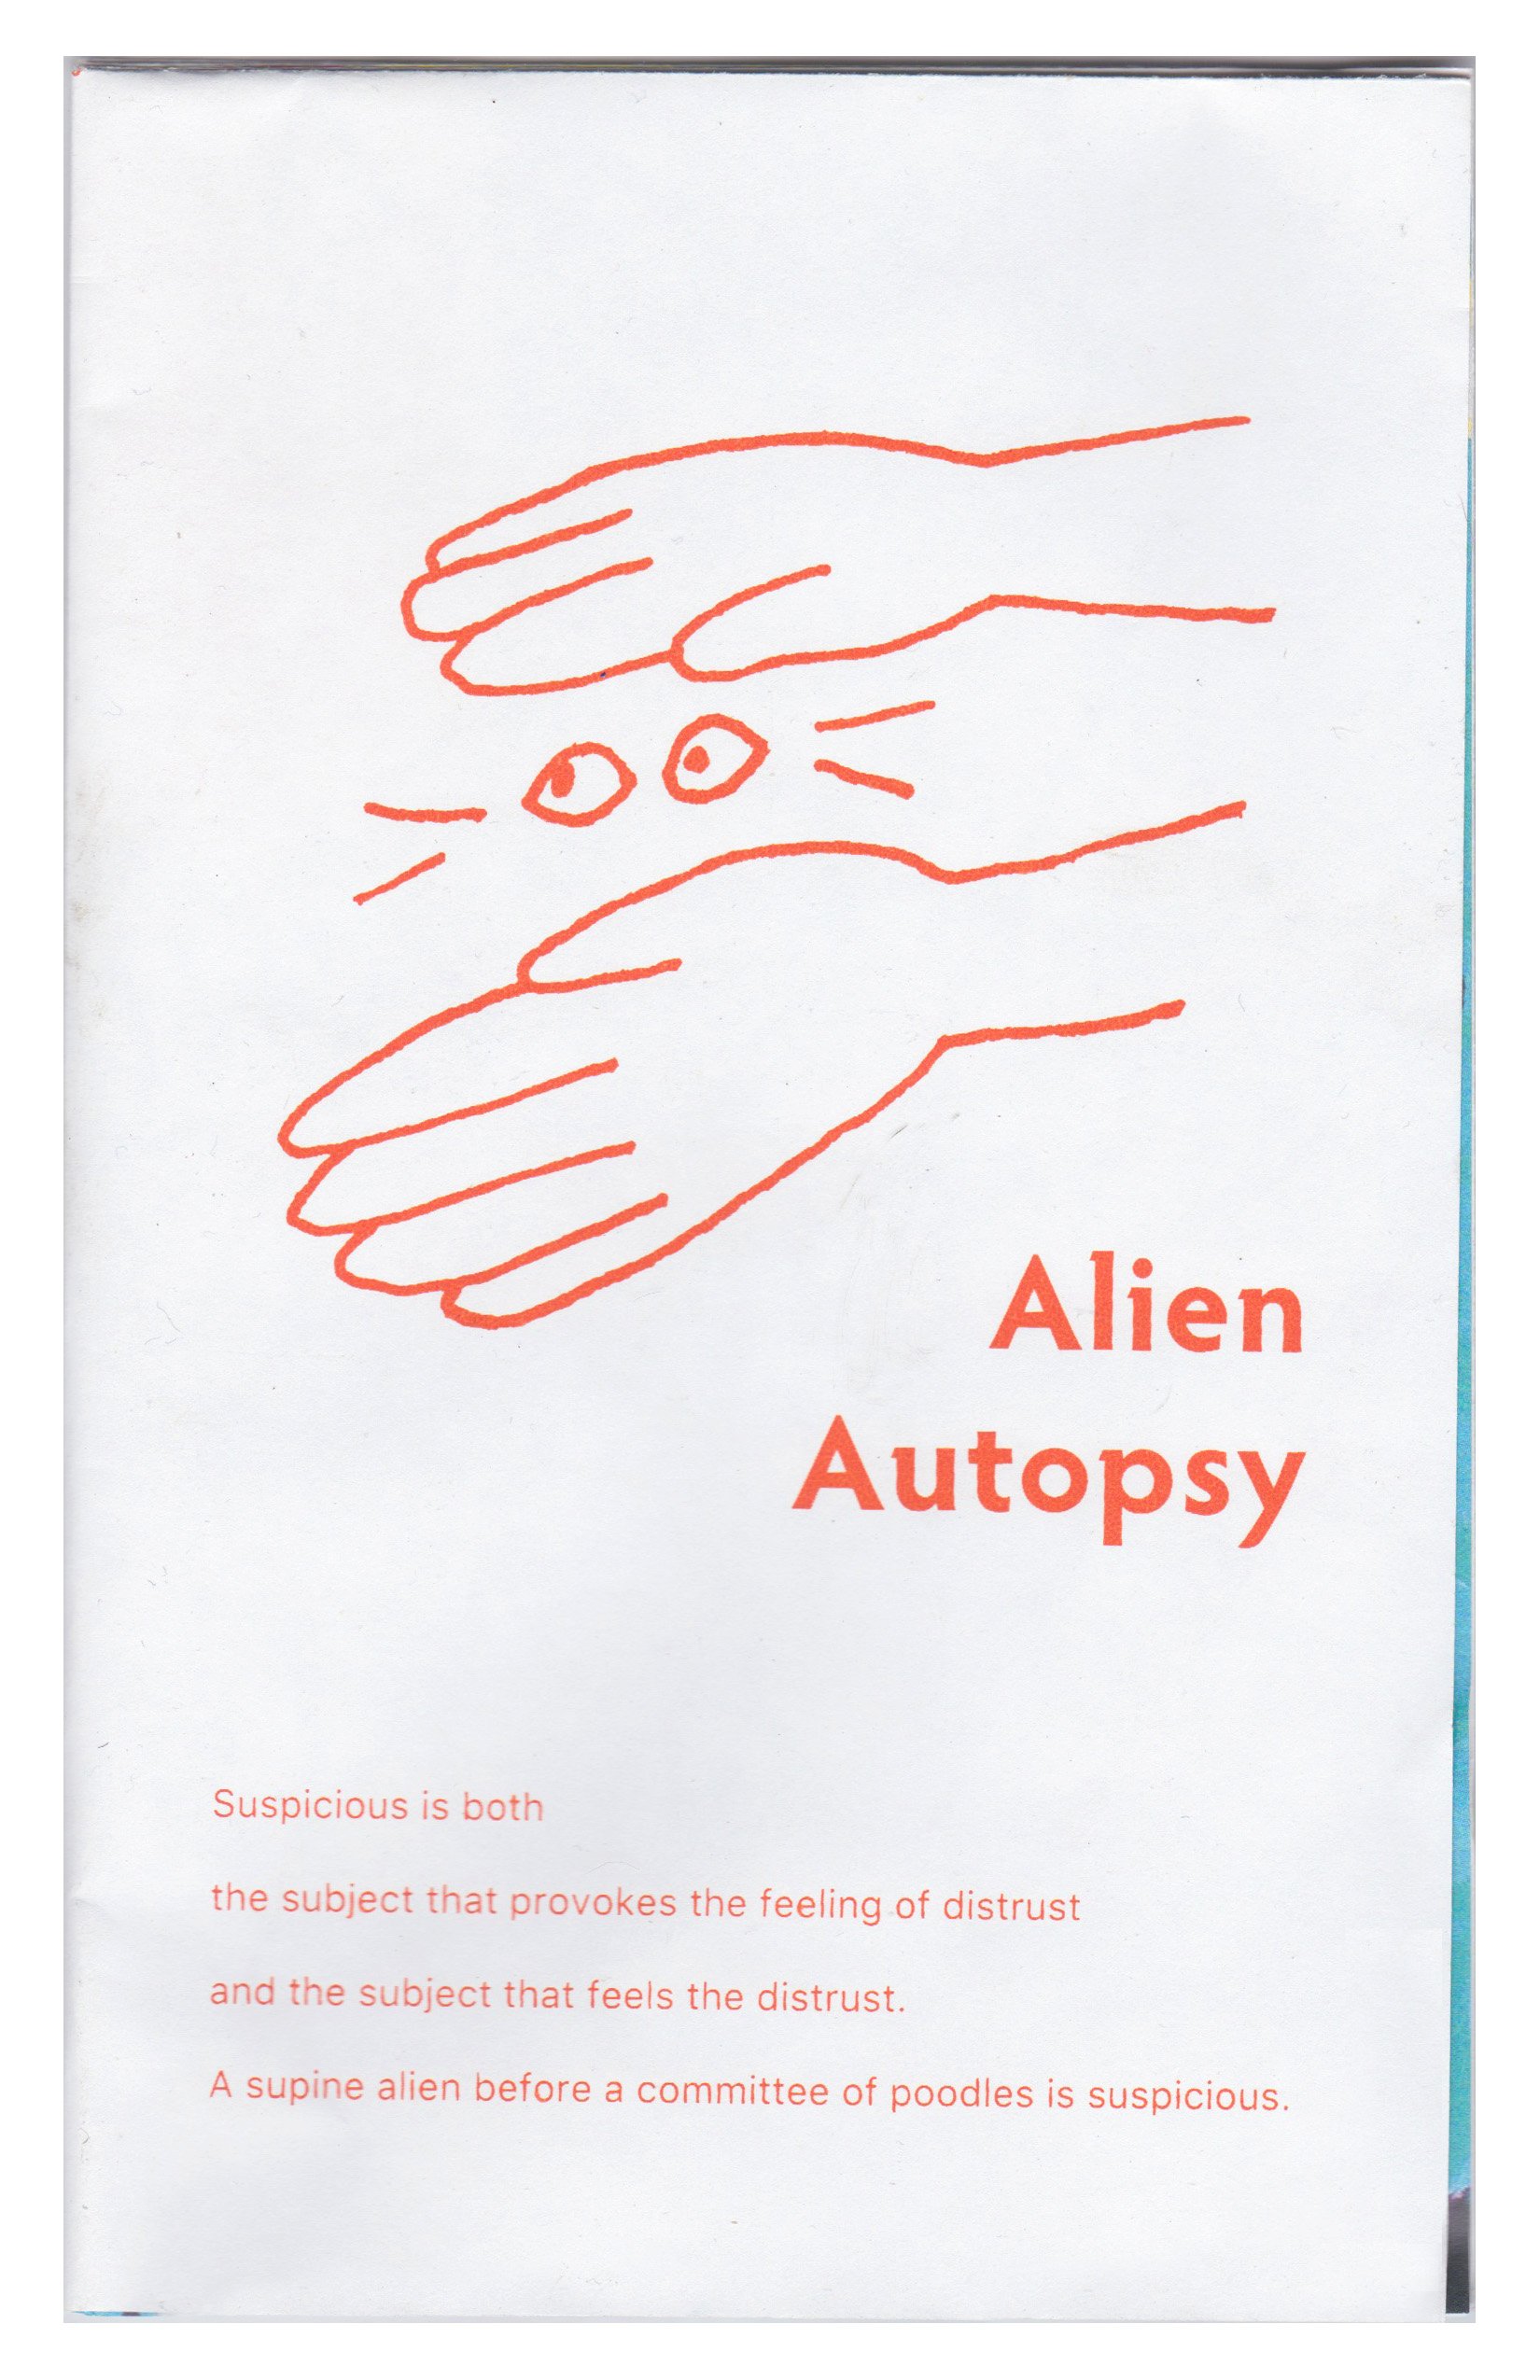 Sara Sremac, Margot Bird, &amp; Annie Sutzman "Alien Autopsy" 2018